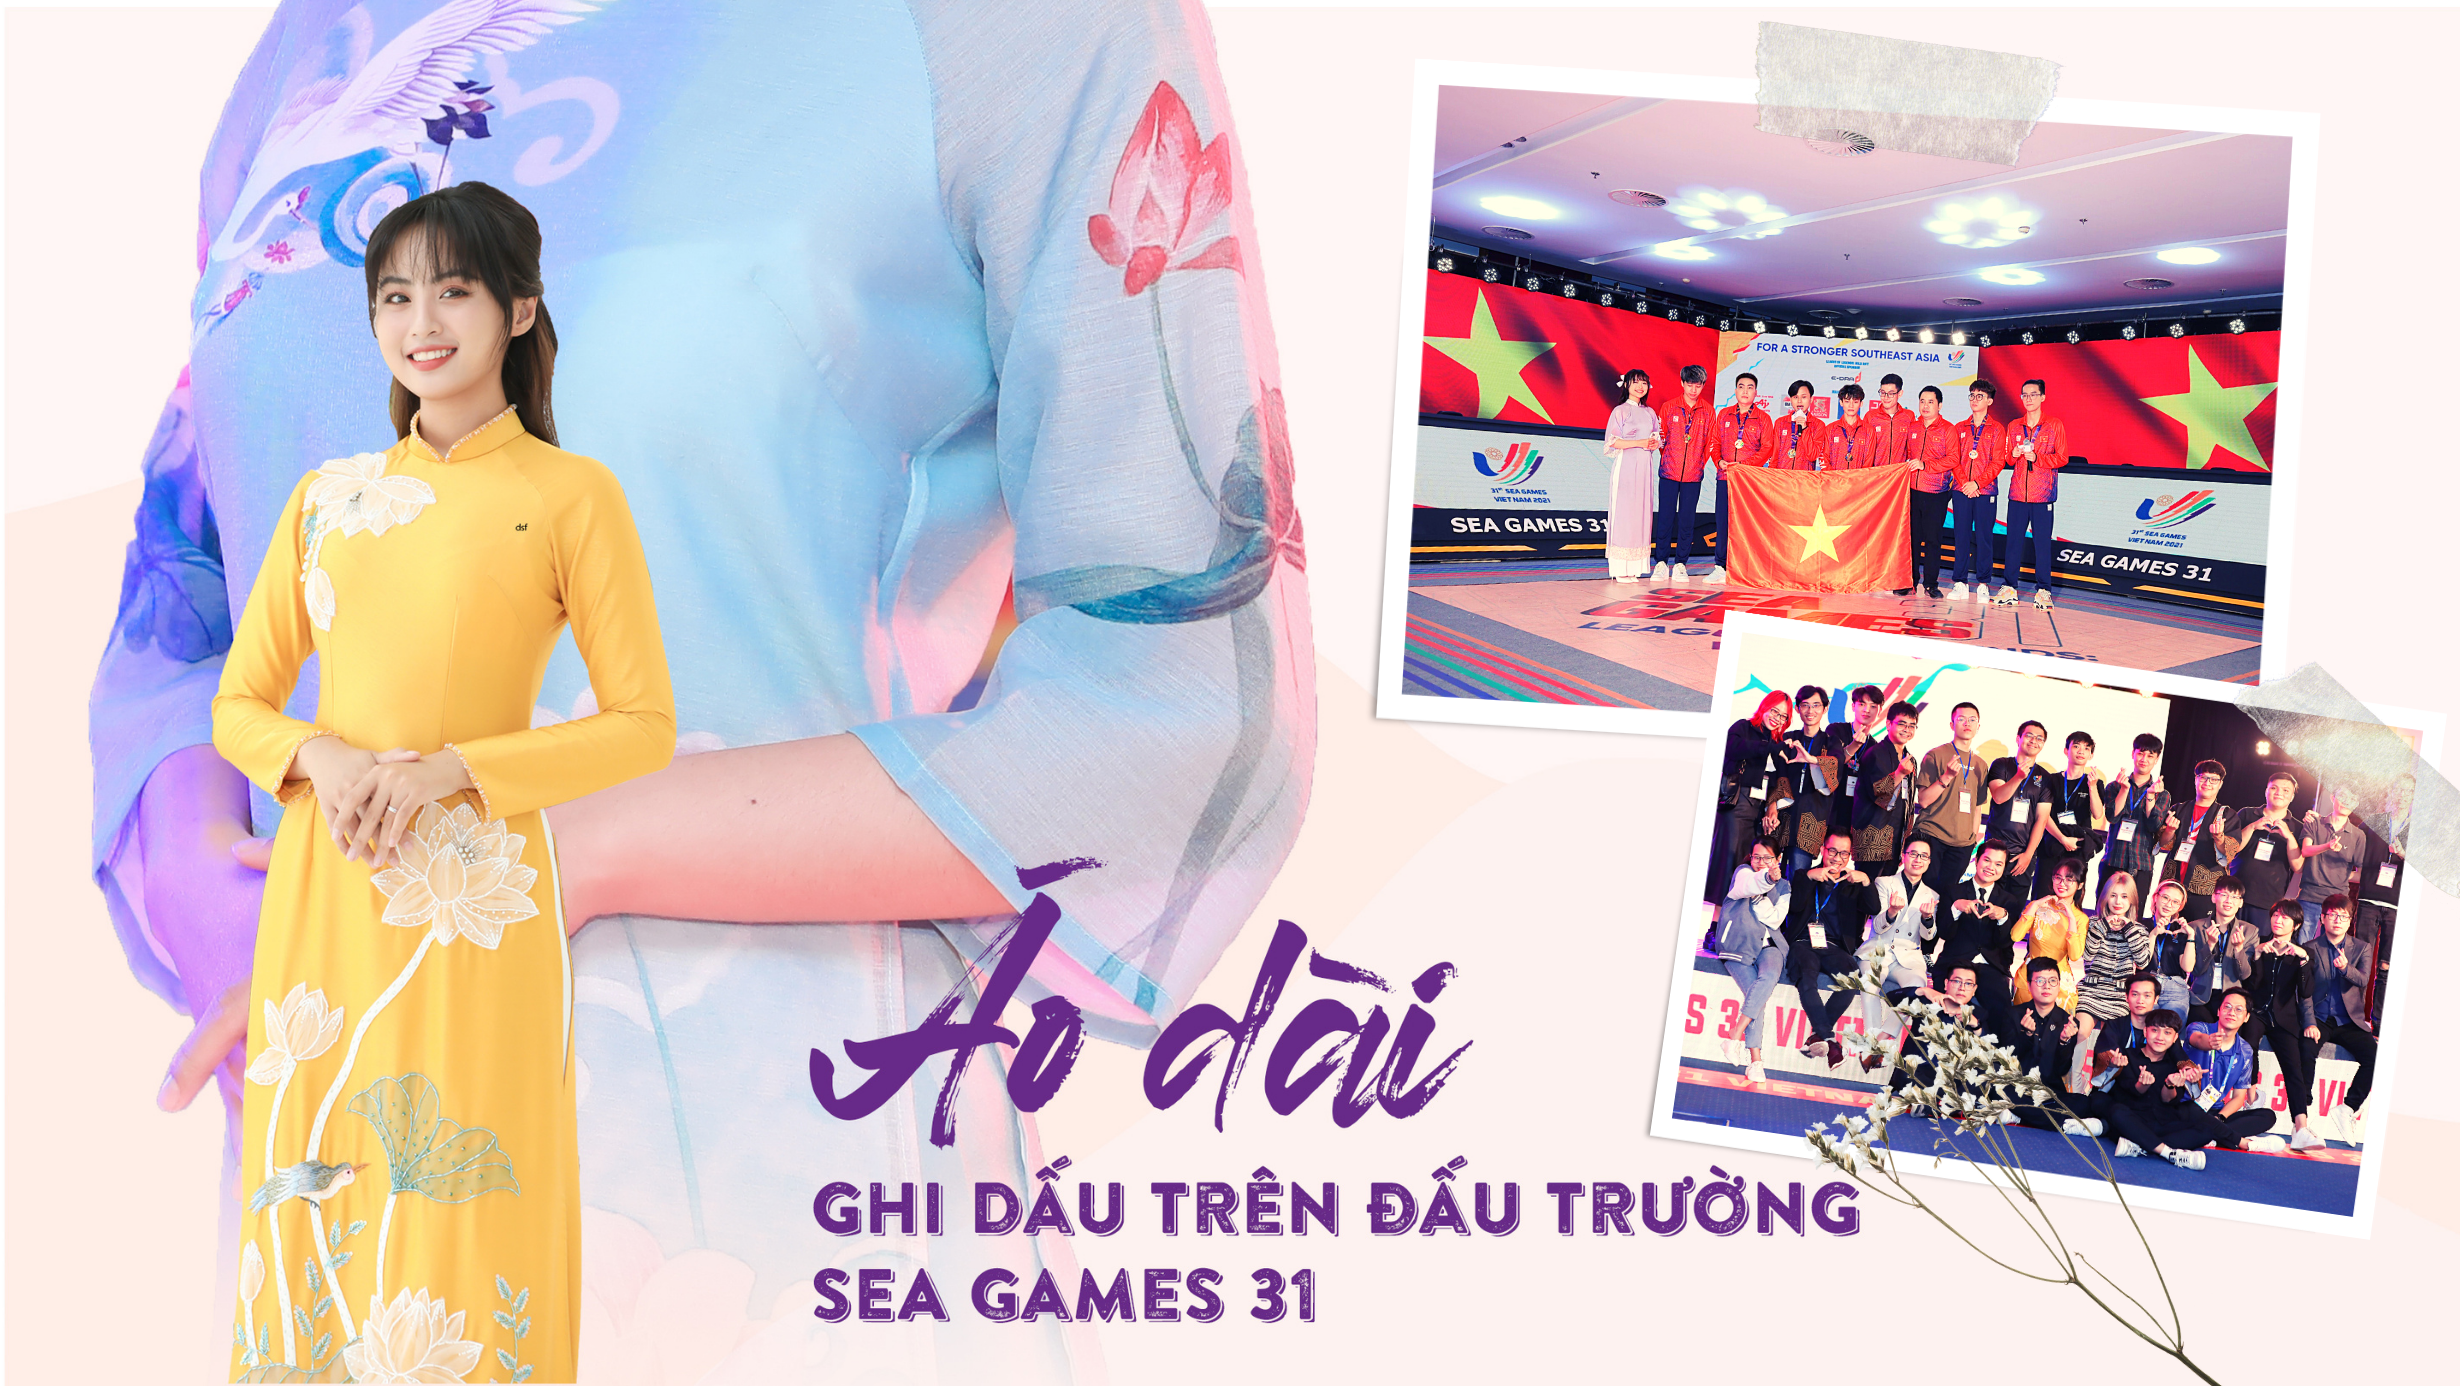 Áo dài Việt Nam ghi dấu trên đấu trường SEA Games 31